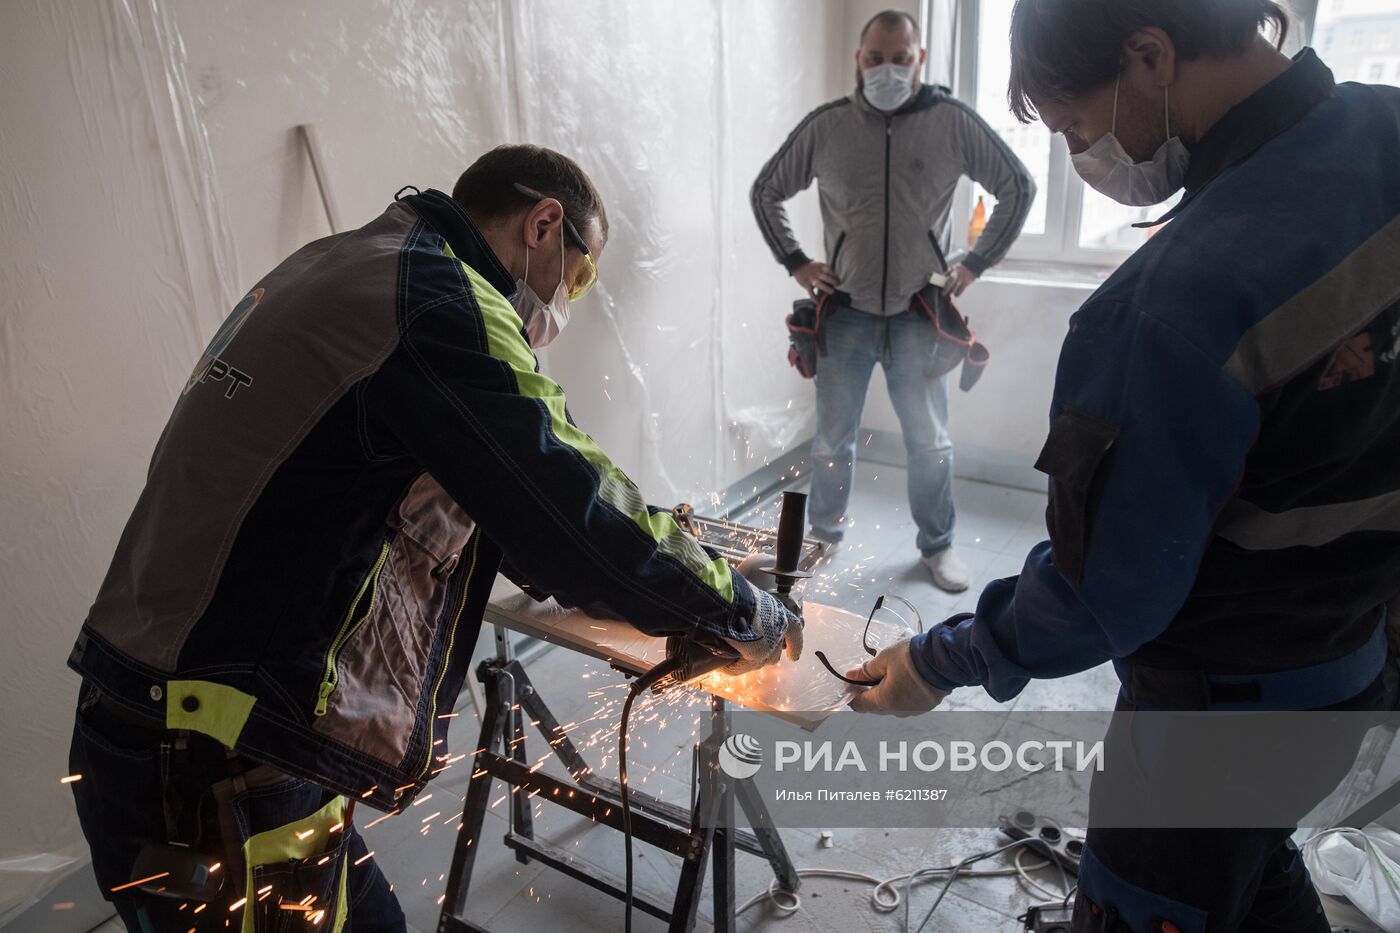 Больница имени С. И. Спасокукоцкого готовится принимать пациентов с коронавирусом